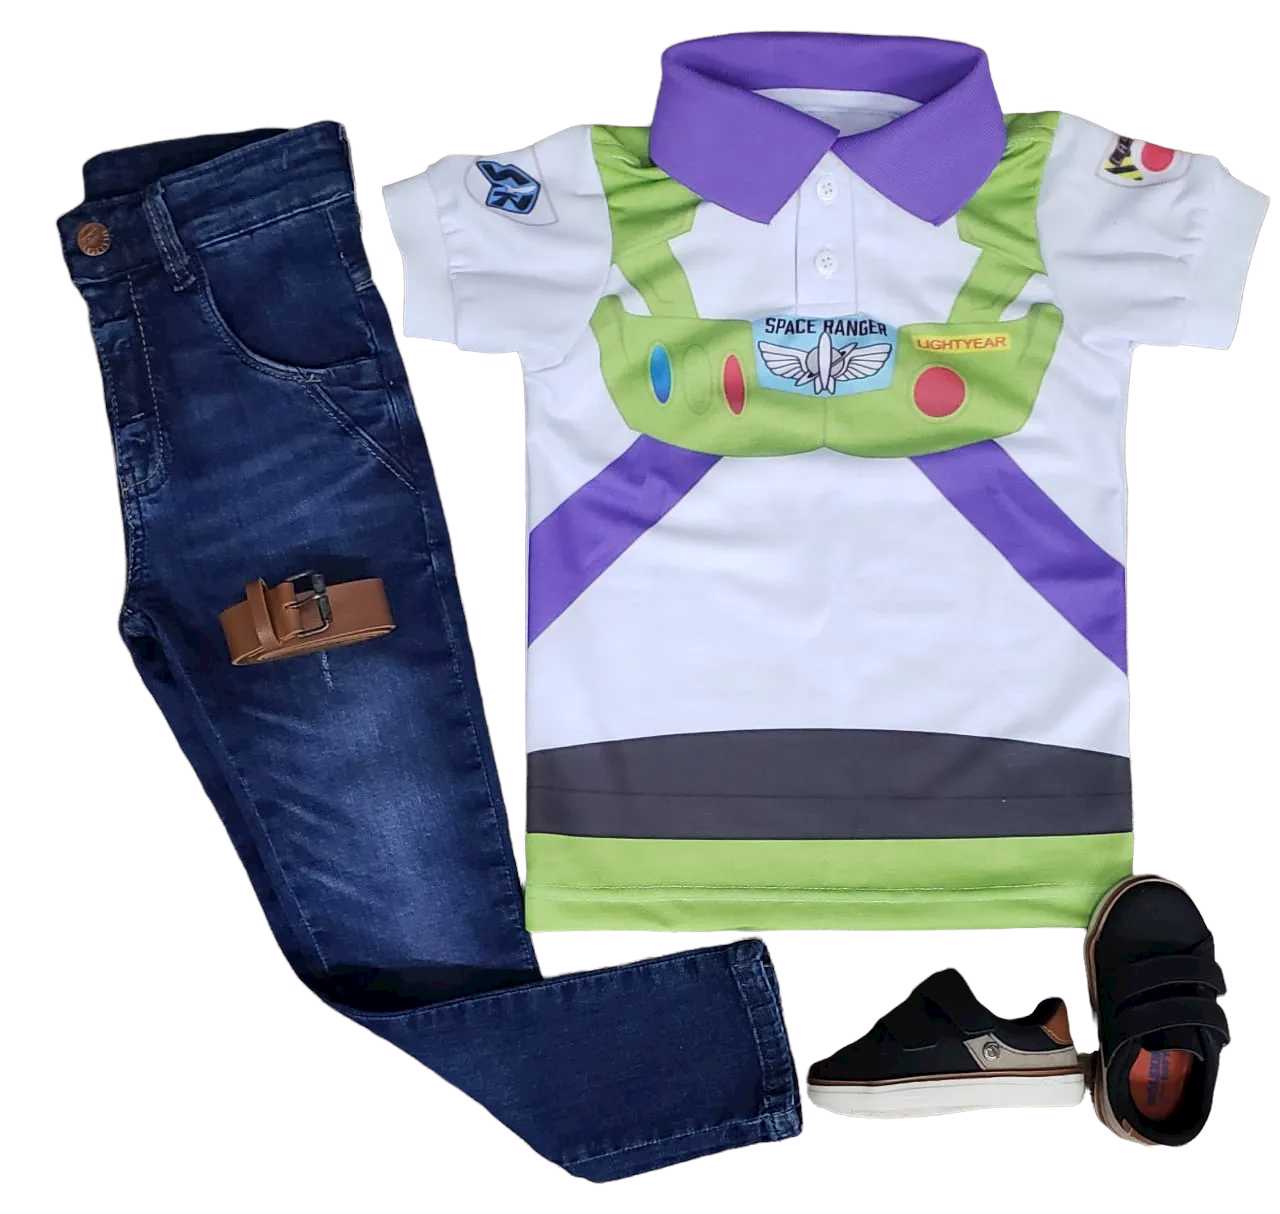 Roupa Calça Jeans Buzz Lightyear - Toy Story Infantil